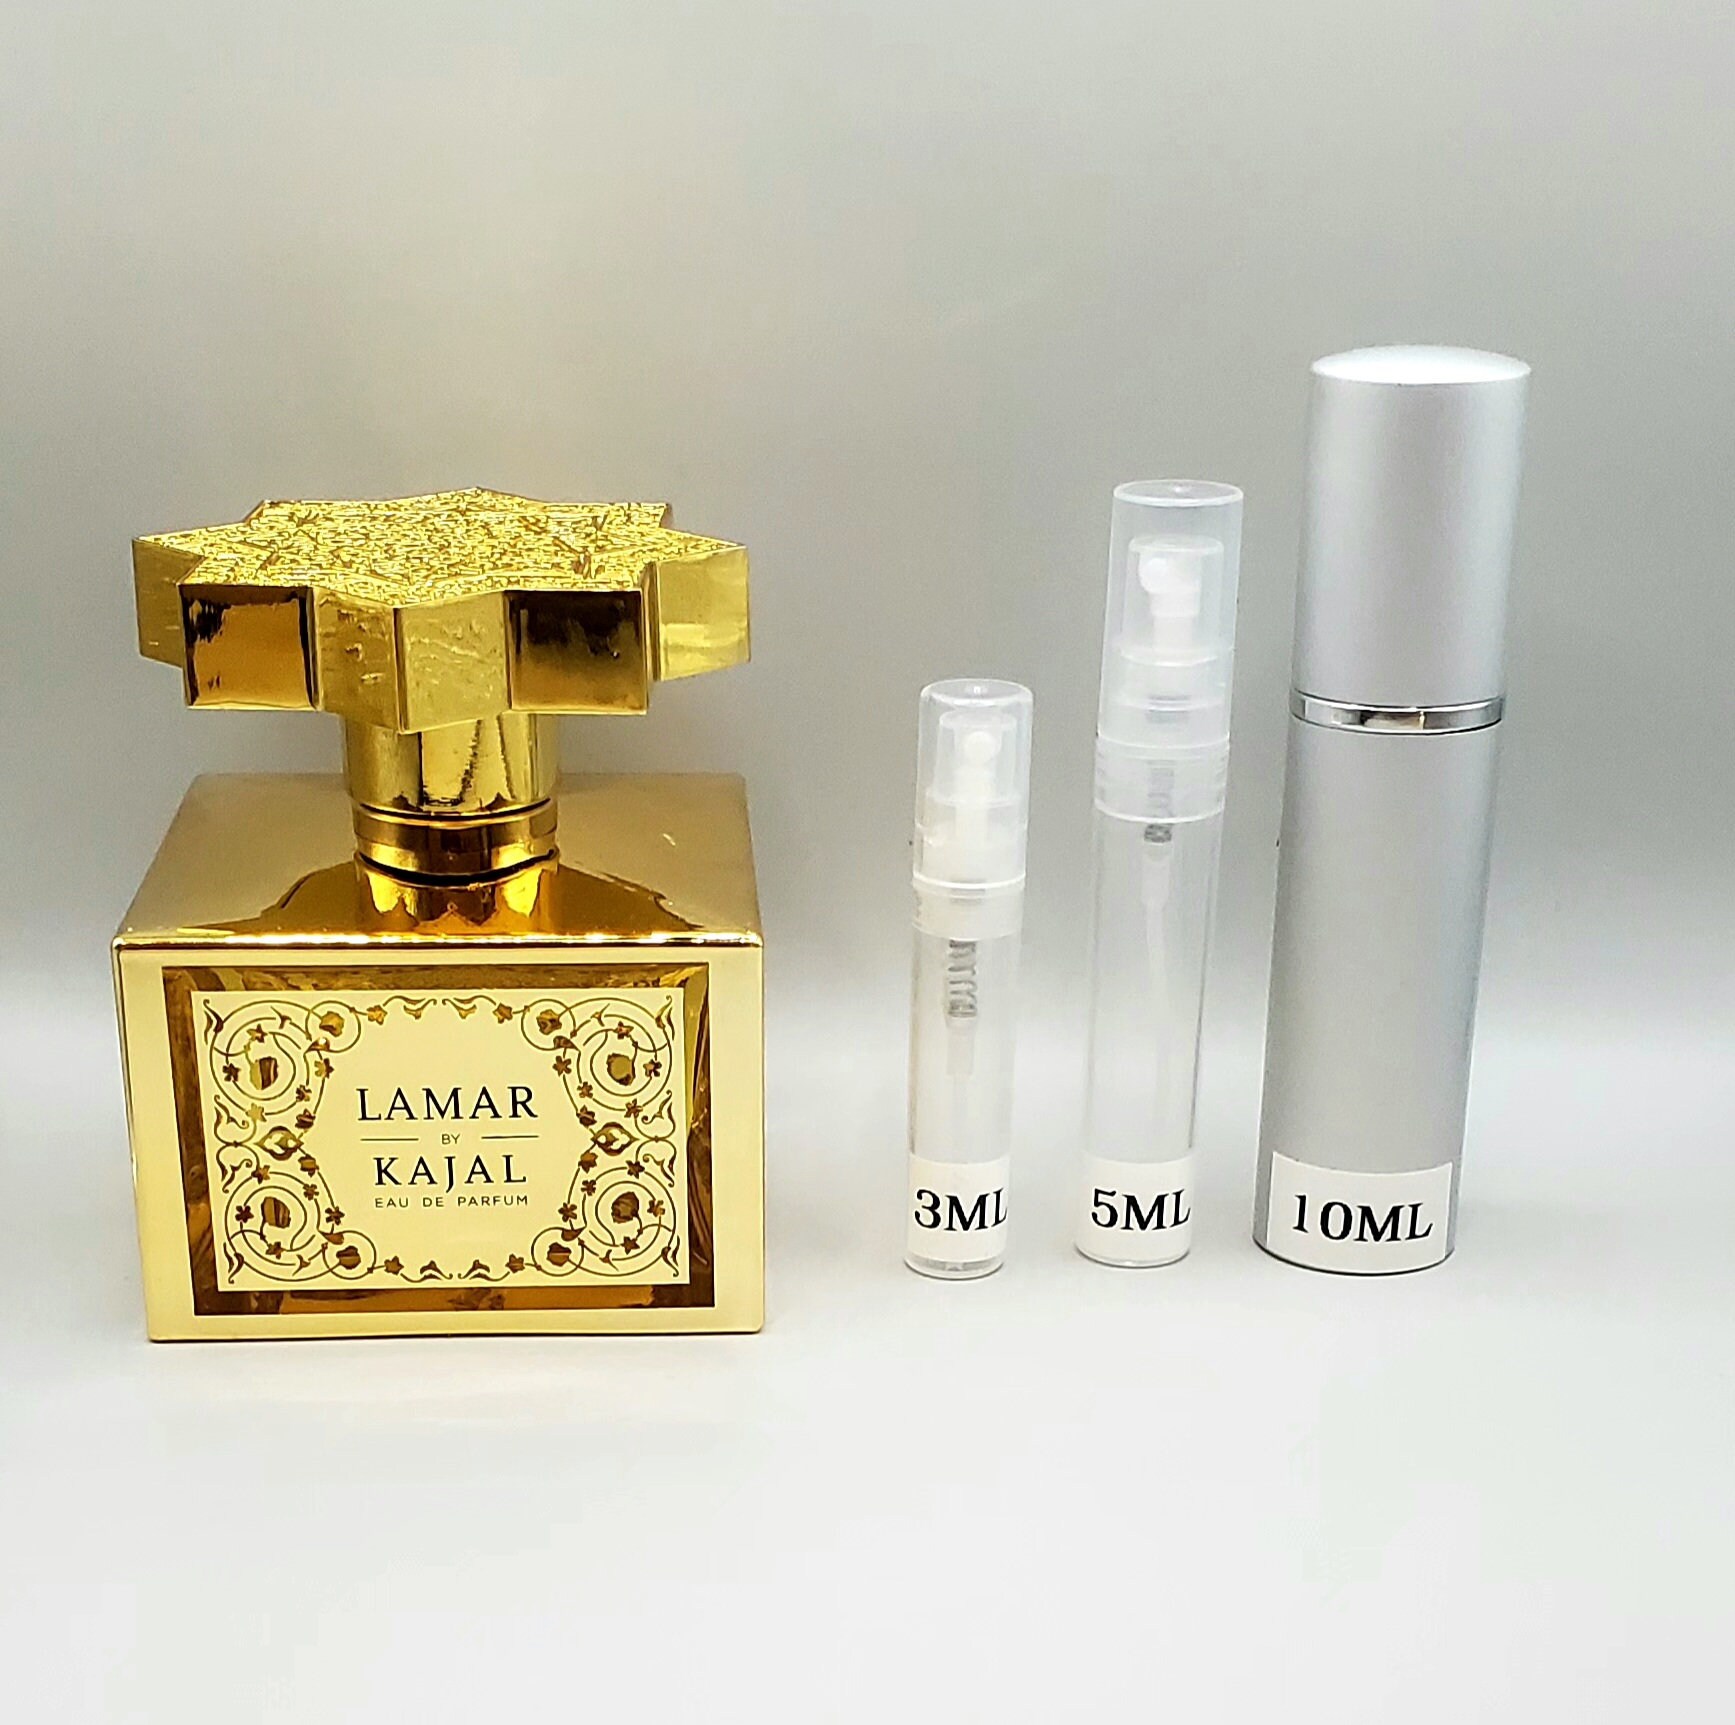 Lamar by Kajal Eau de parfum 3ml 5ml 10ml Travel Size Sample Decant Bottle  -  Italia